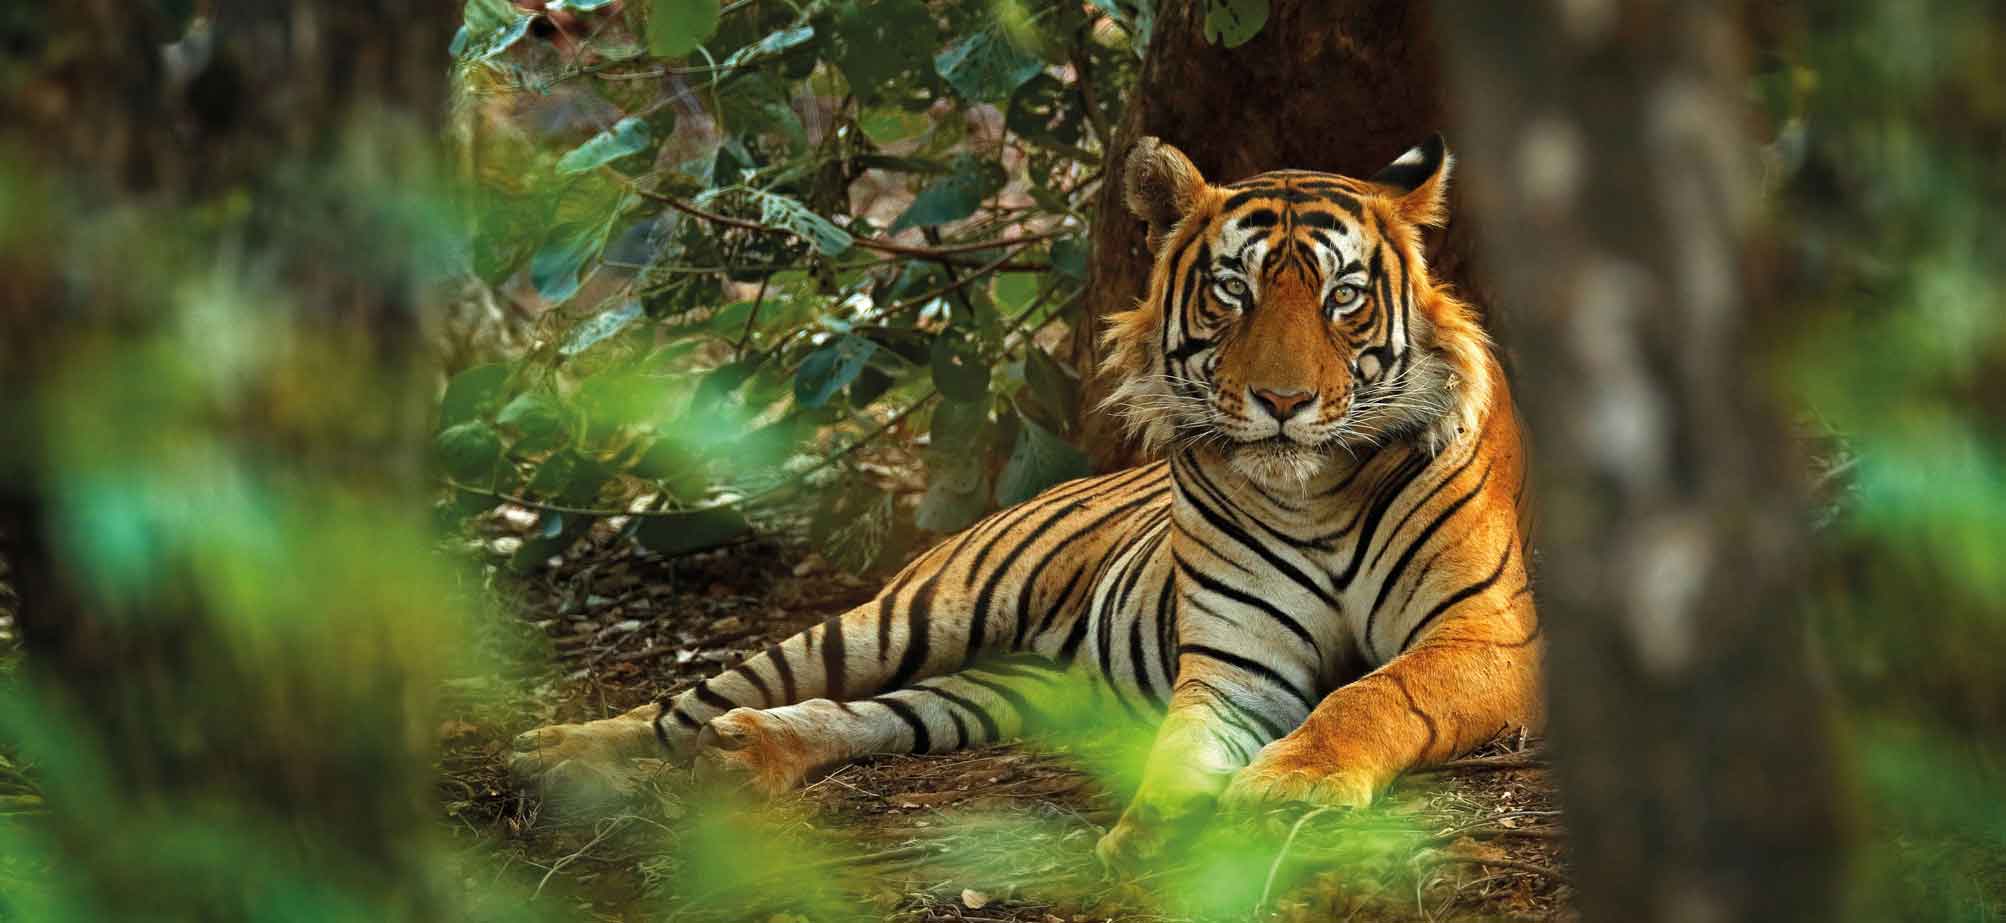 Tiger Ranthambore National Park India